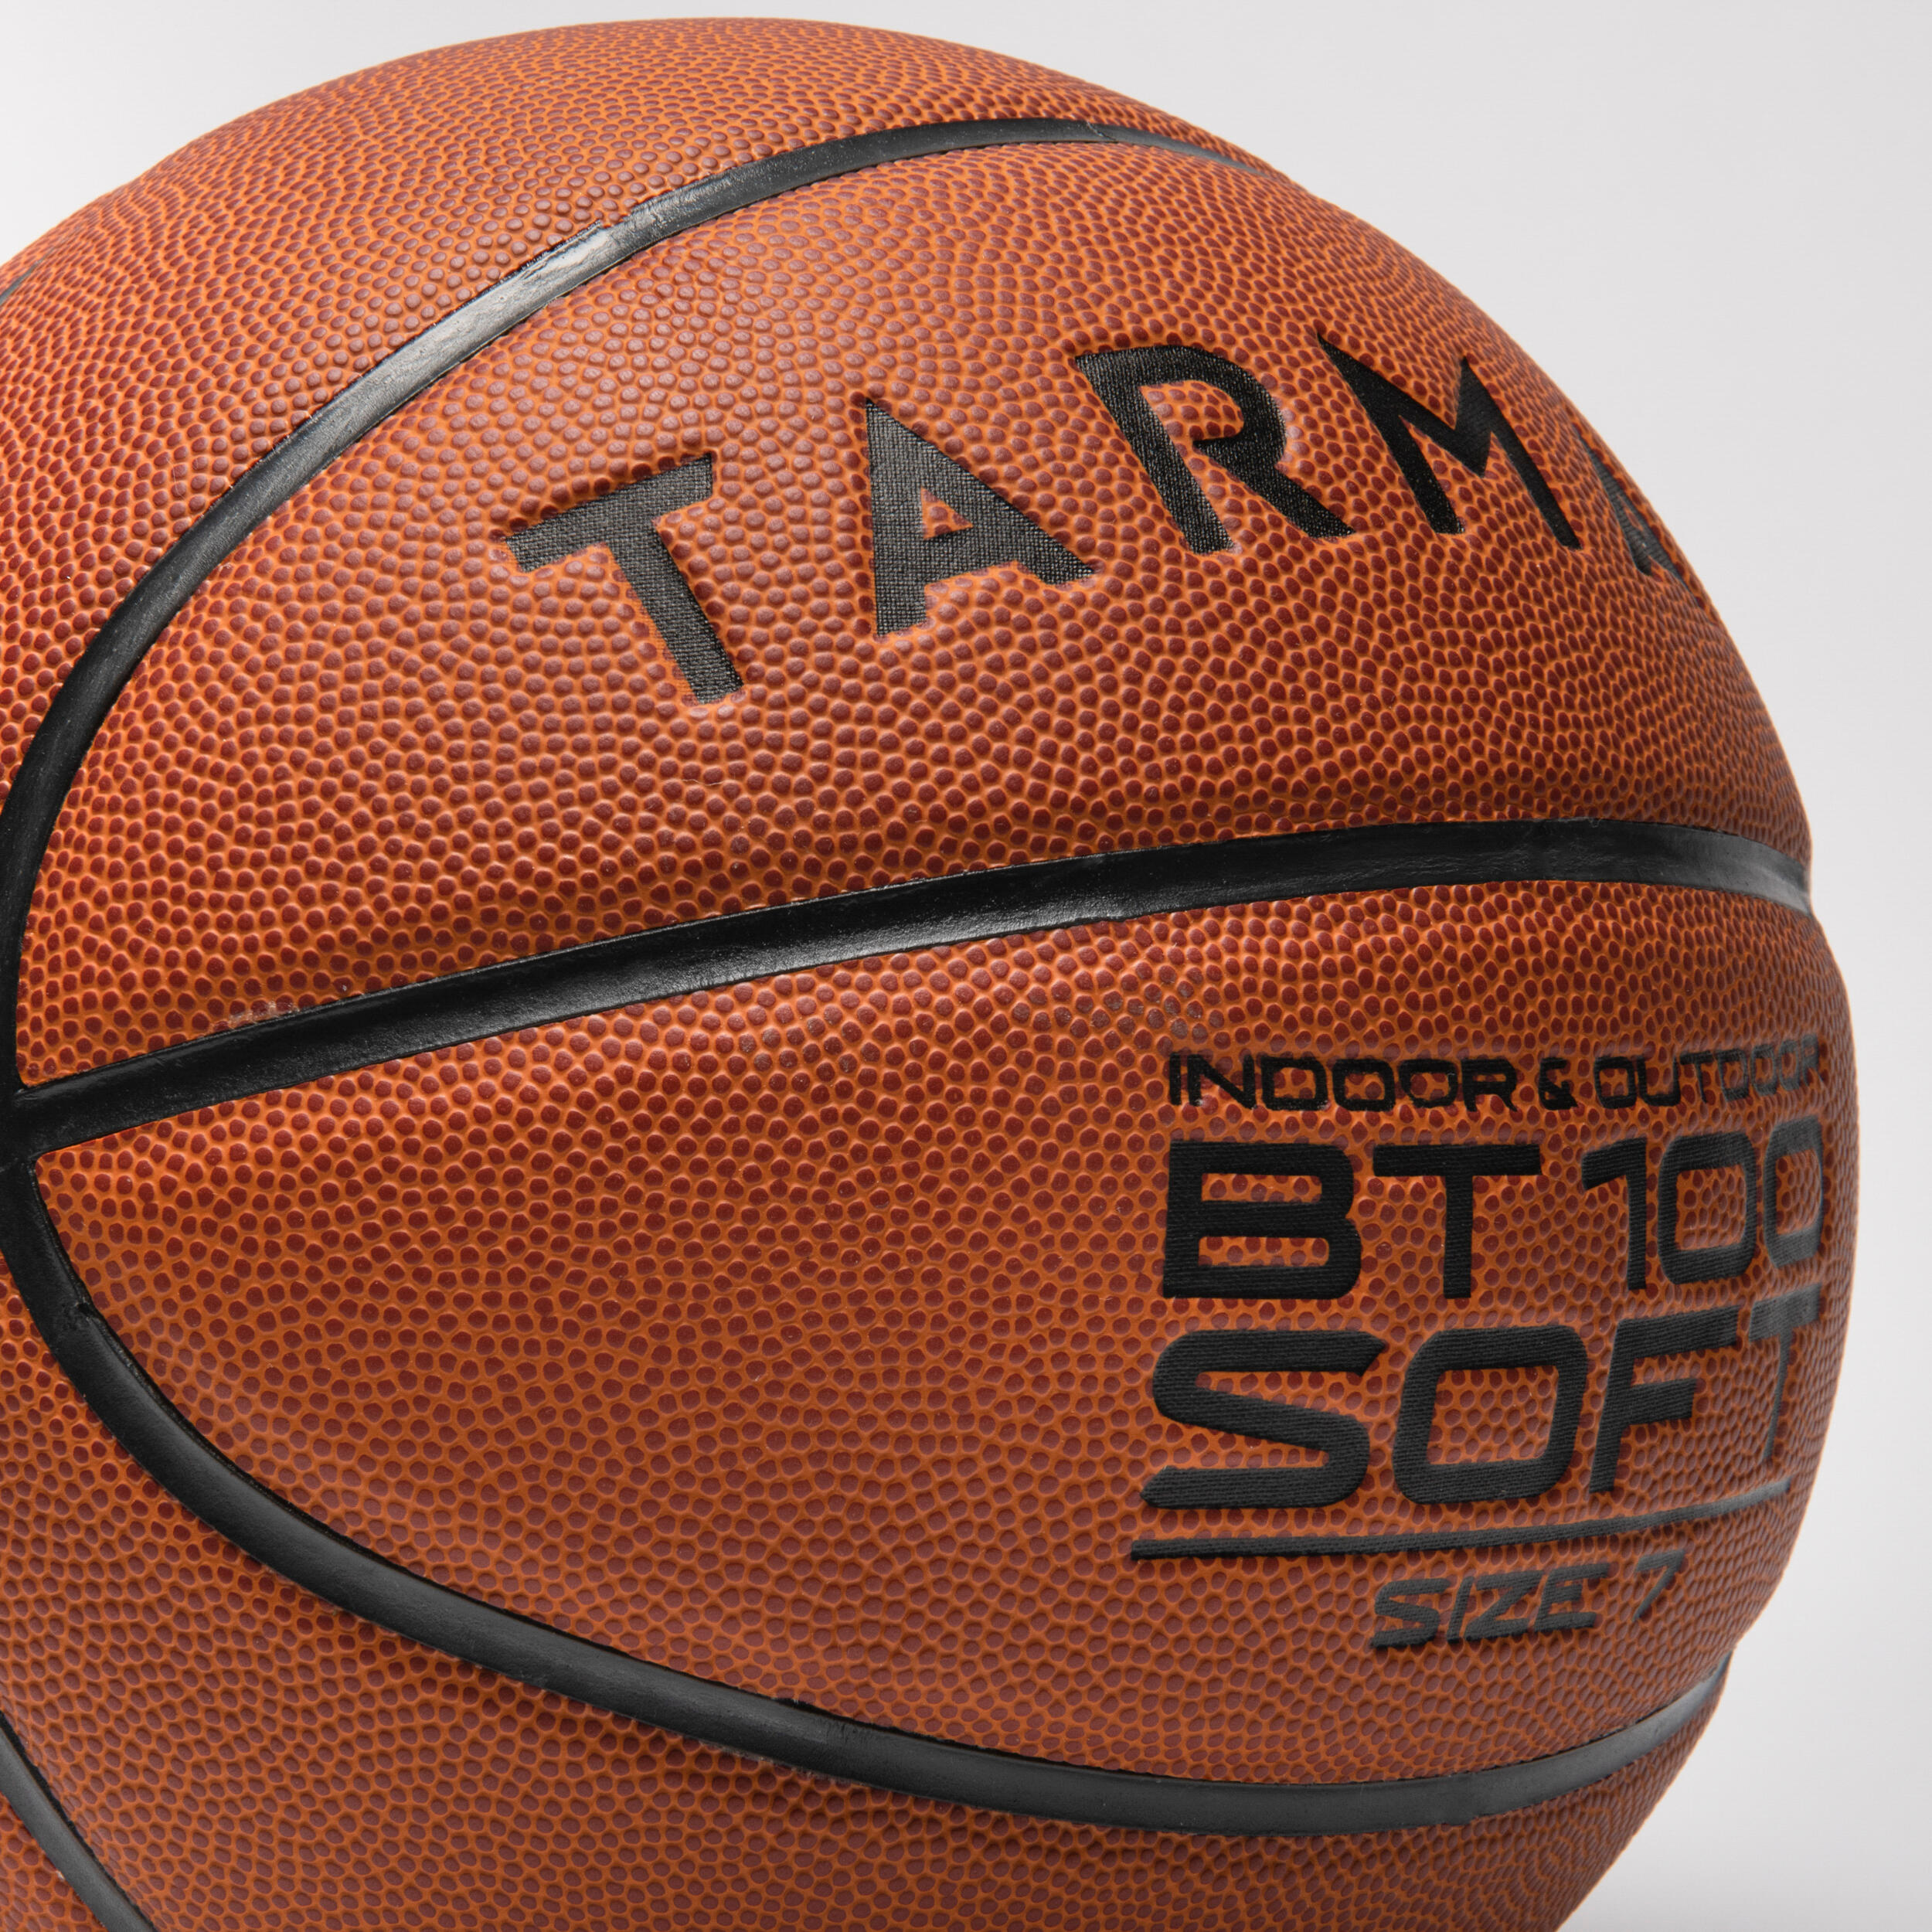 Ballon de basketball taille 7 - BT 100 orange - TARMAK